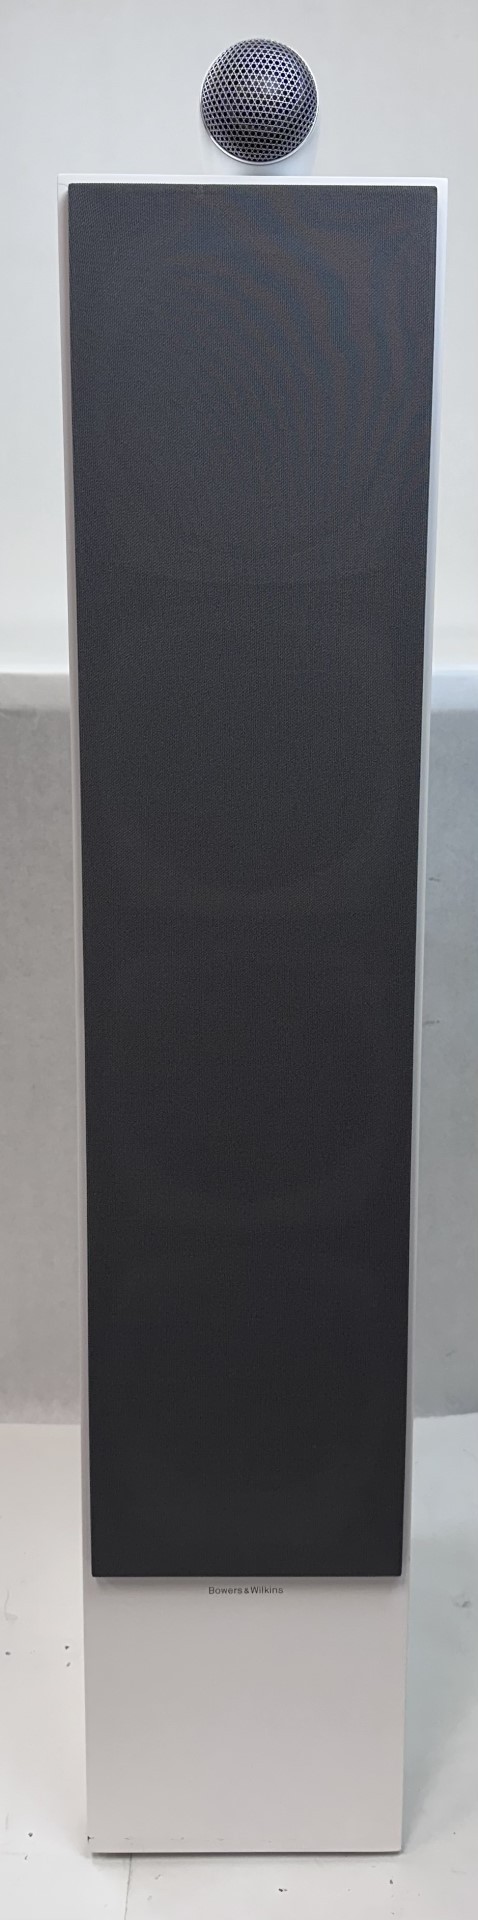 Bowers & Wilkins 700 Series 702 S2 Floorstanding Speaker w/ Tweeter -Satin White